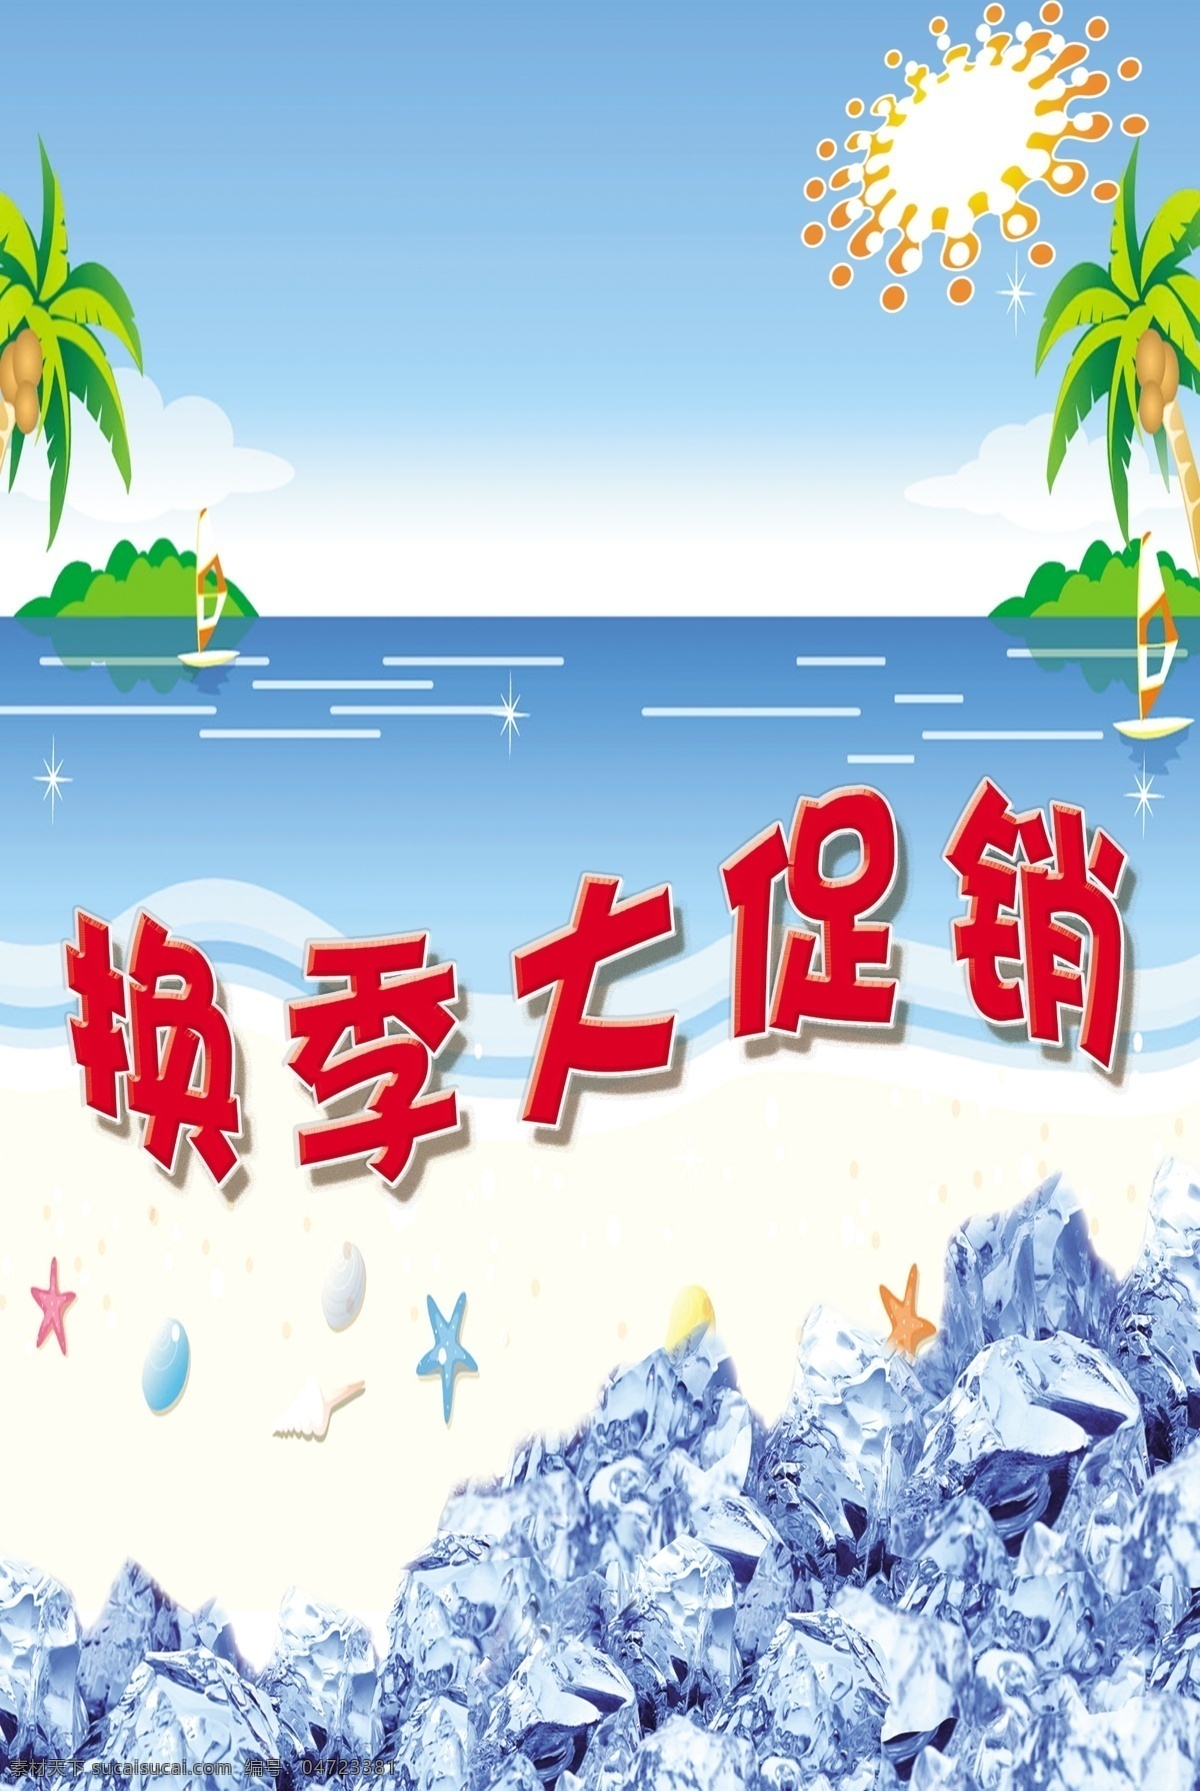 贝壳 冰块 冰山 船 广告设计模板 海水 蓝色 冰 爽 夏季 换季 大 促销 模板下载 沙滩 热带树 太阳 海洋星 星星 蓝色天空 源文件 其他海报设计